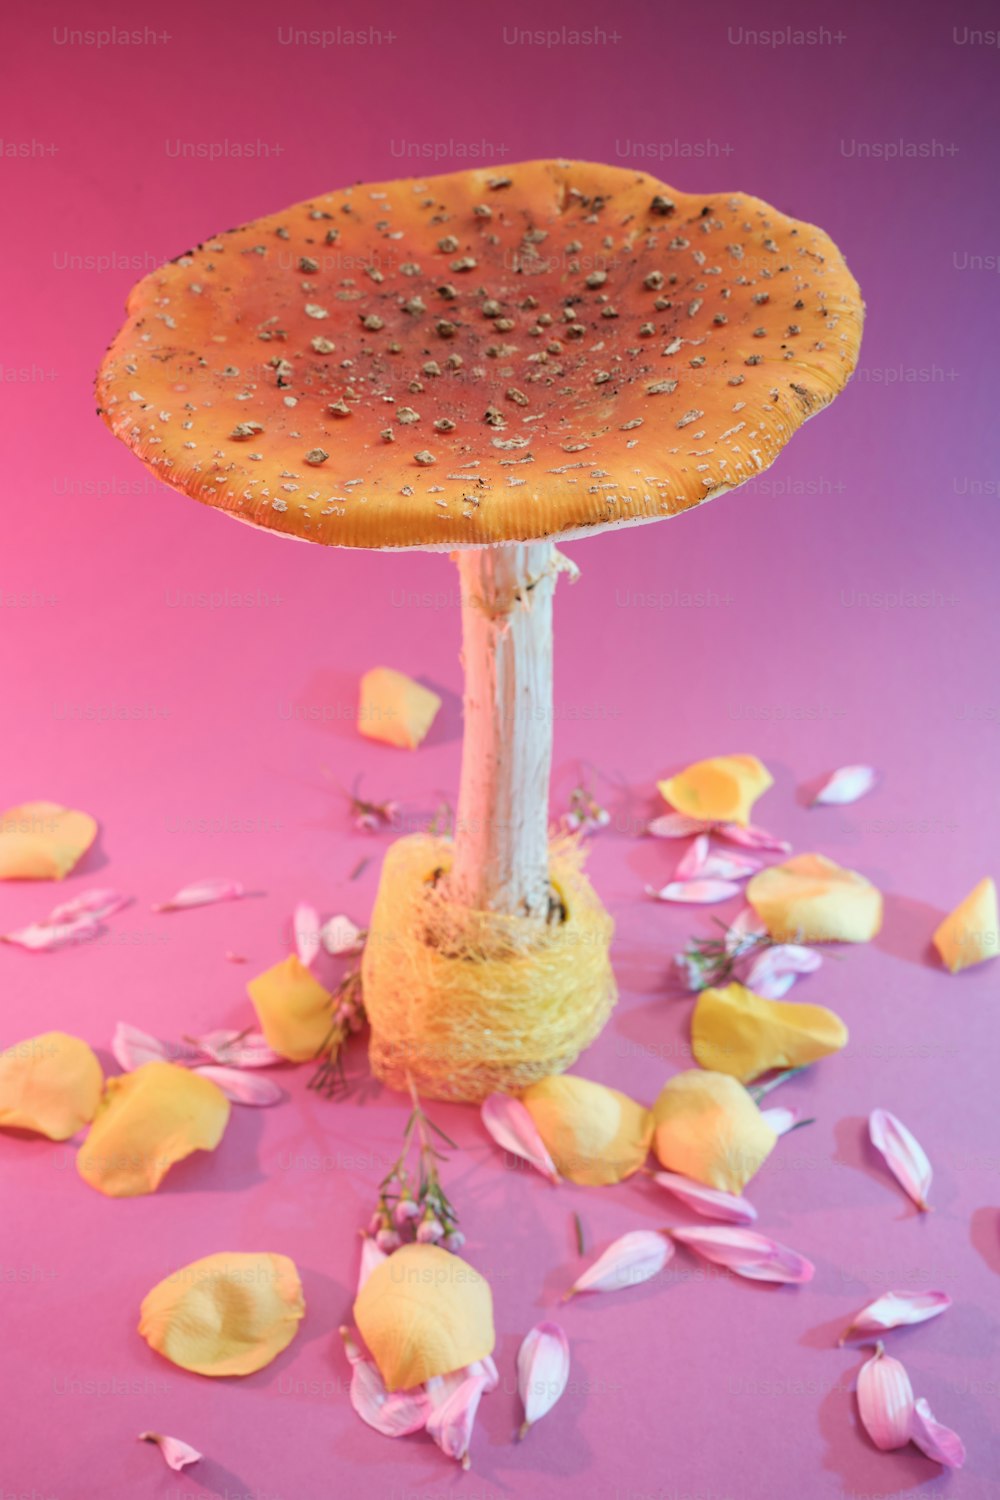 Un oggetto a forma di fungo seduto sopra una superficie rosa